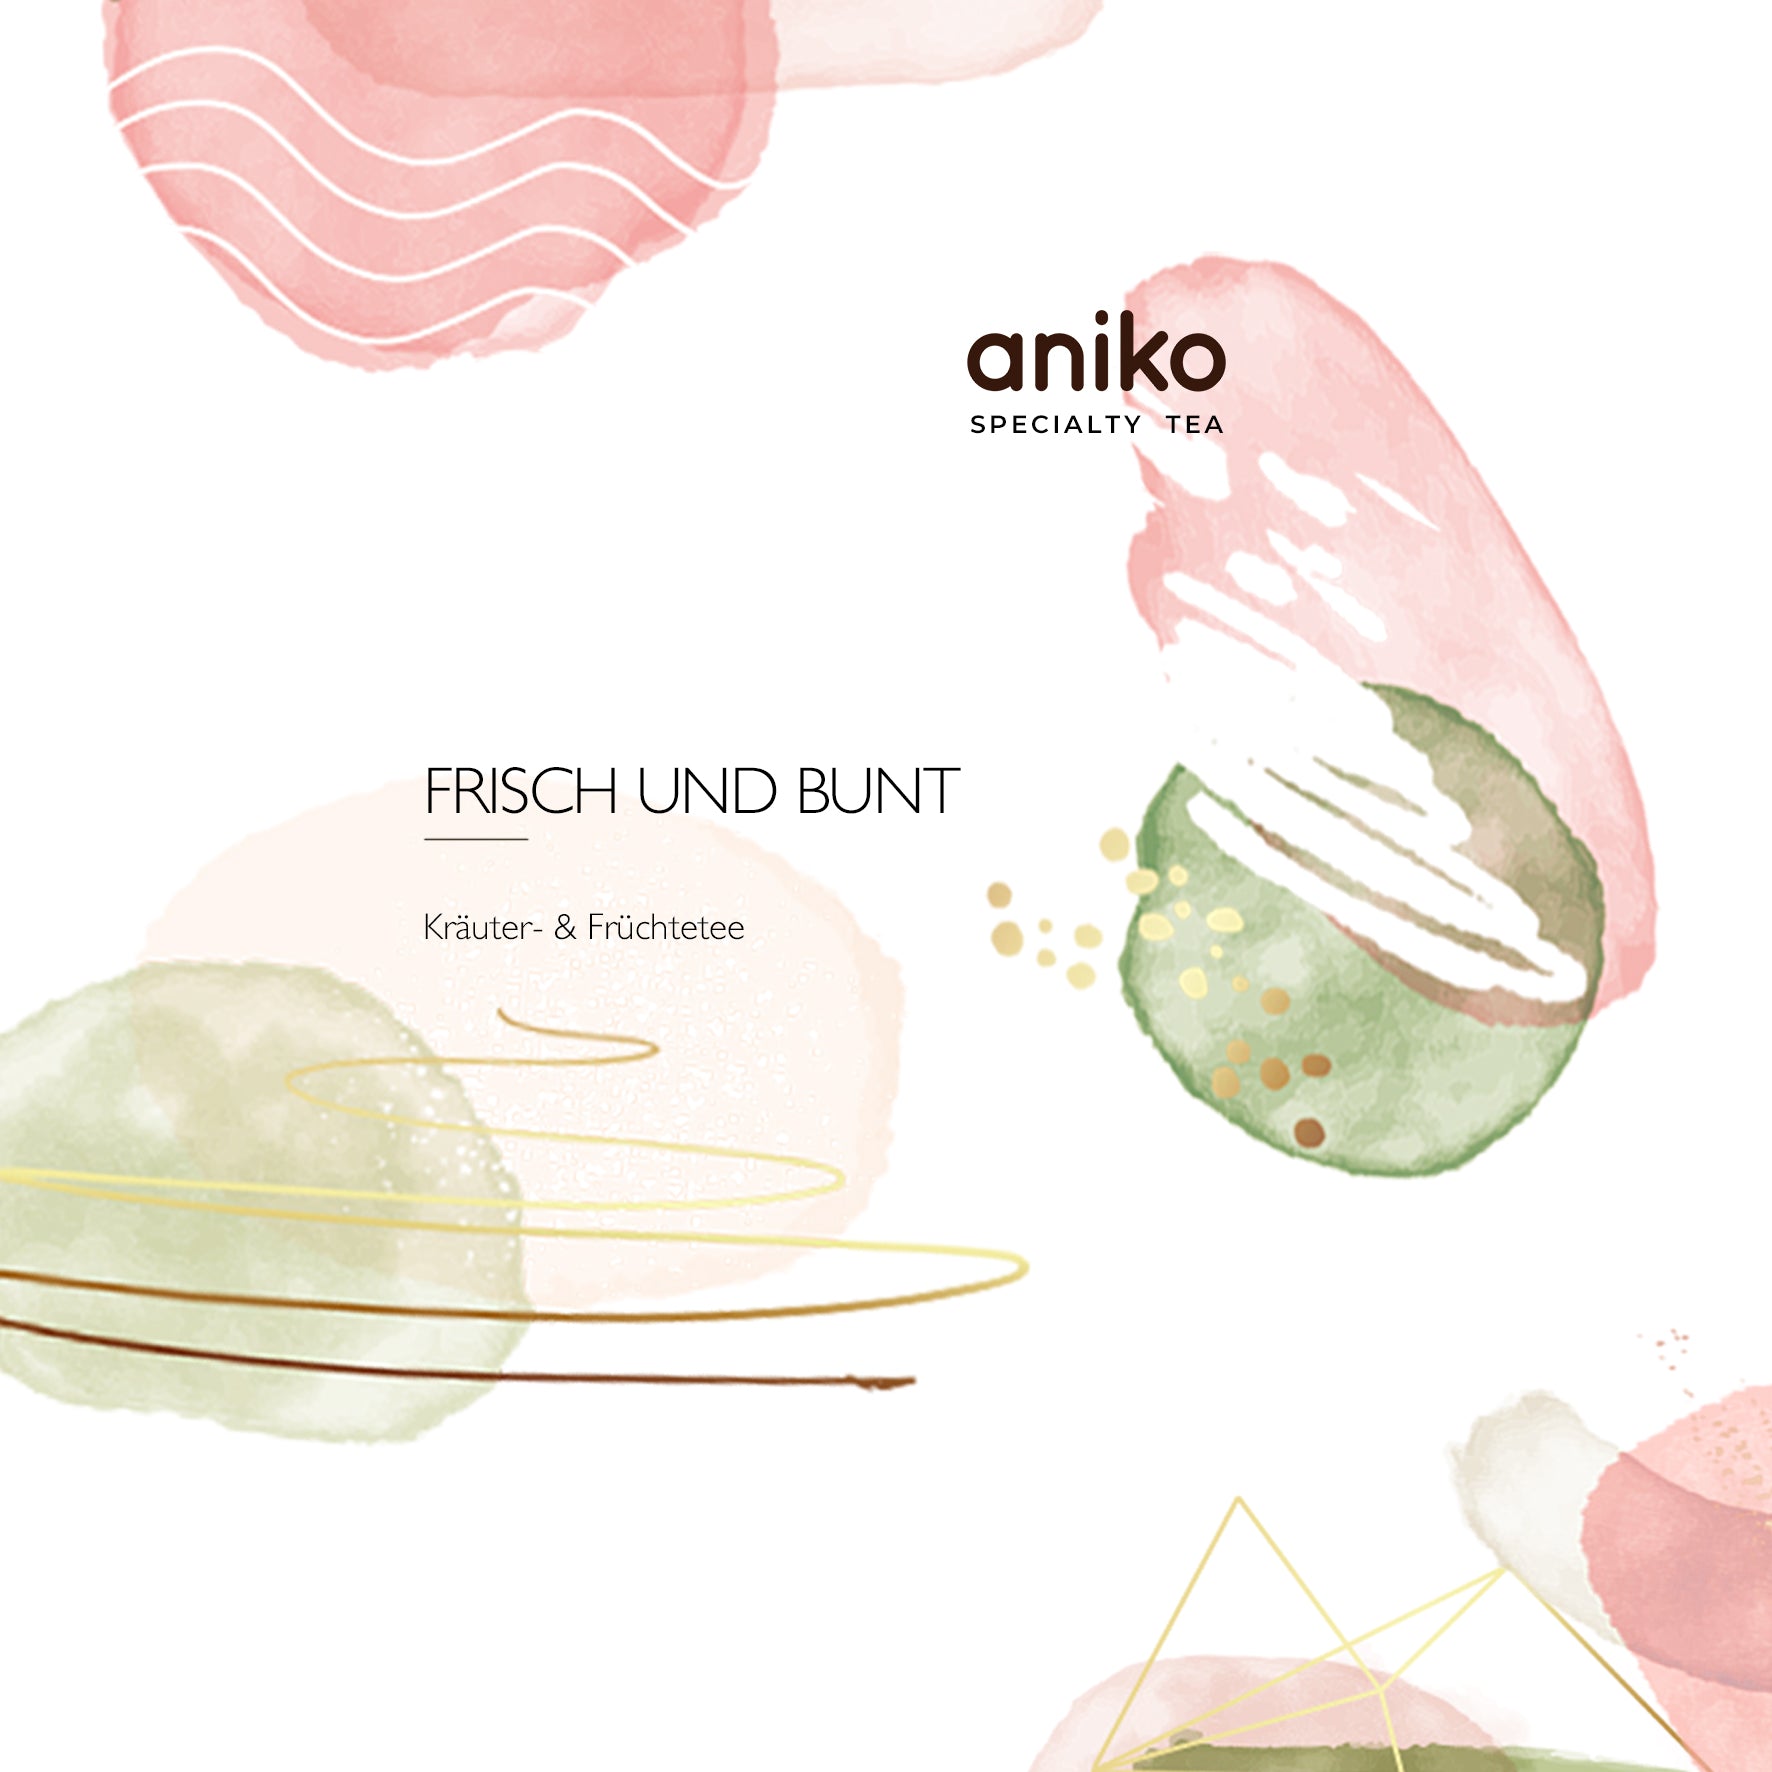 aniko Specialty Tea I Frisch und Bunt